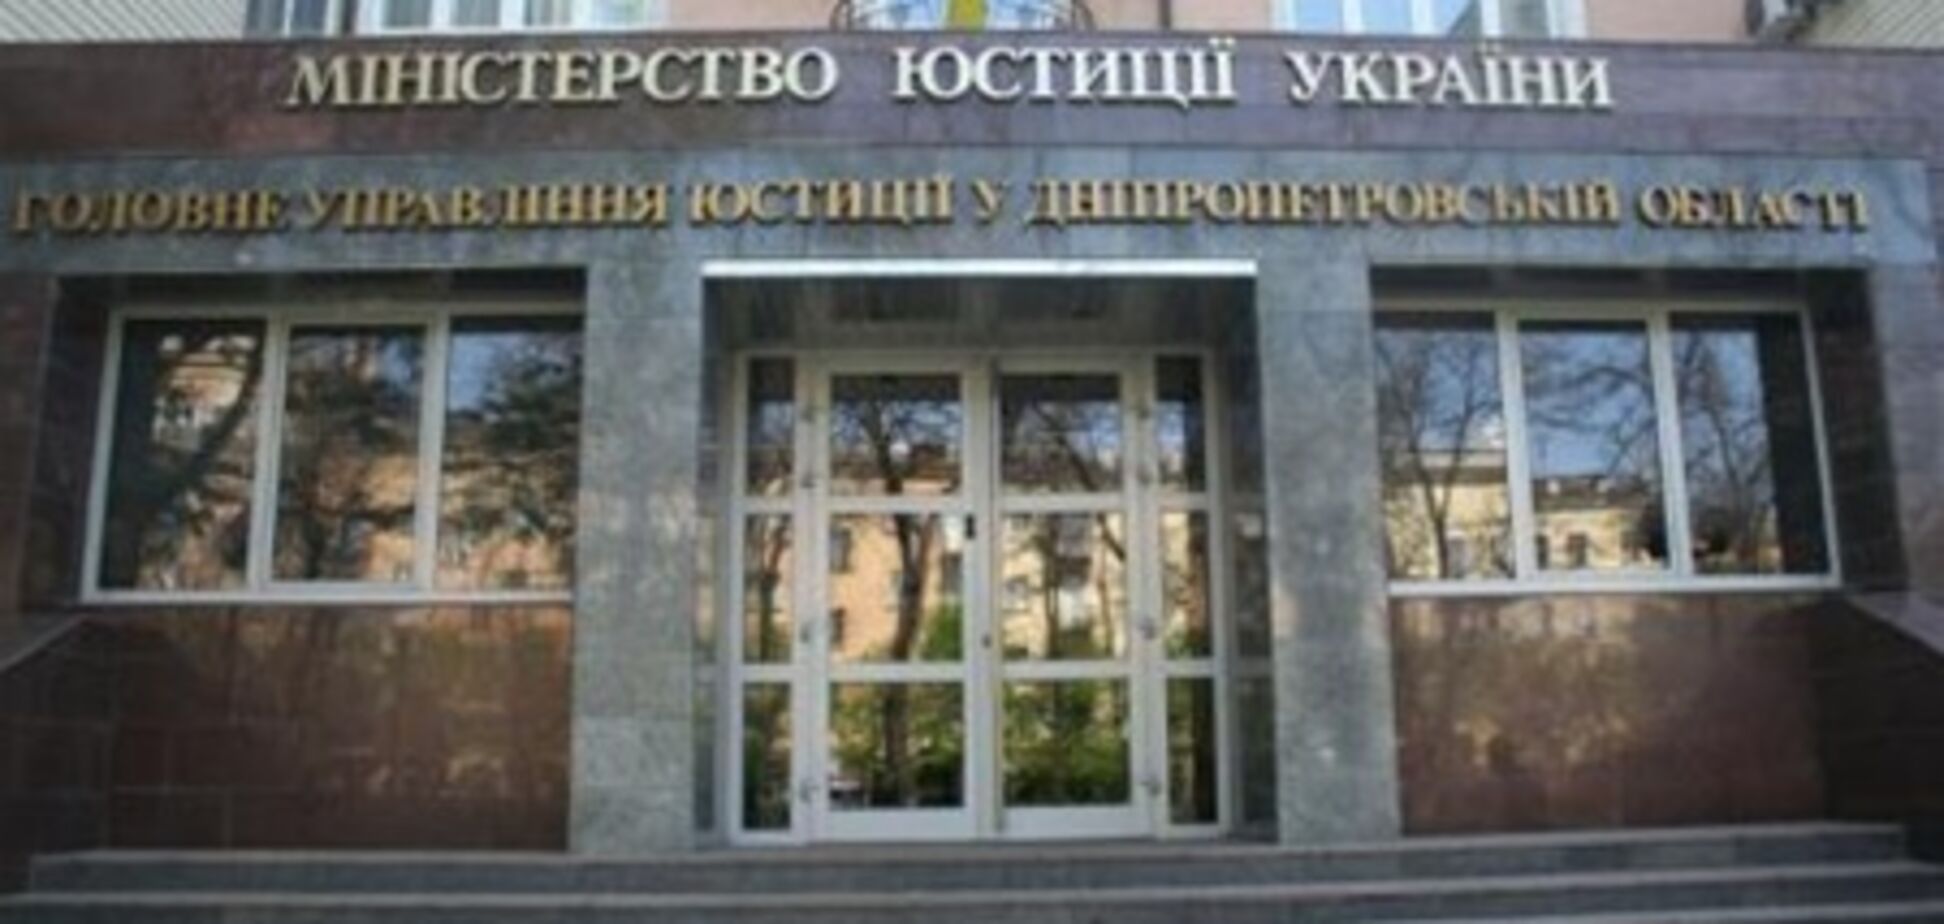 Міліція затримала палія Дніпропетровського міськуправління юстиції